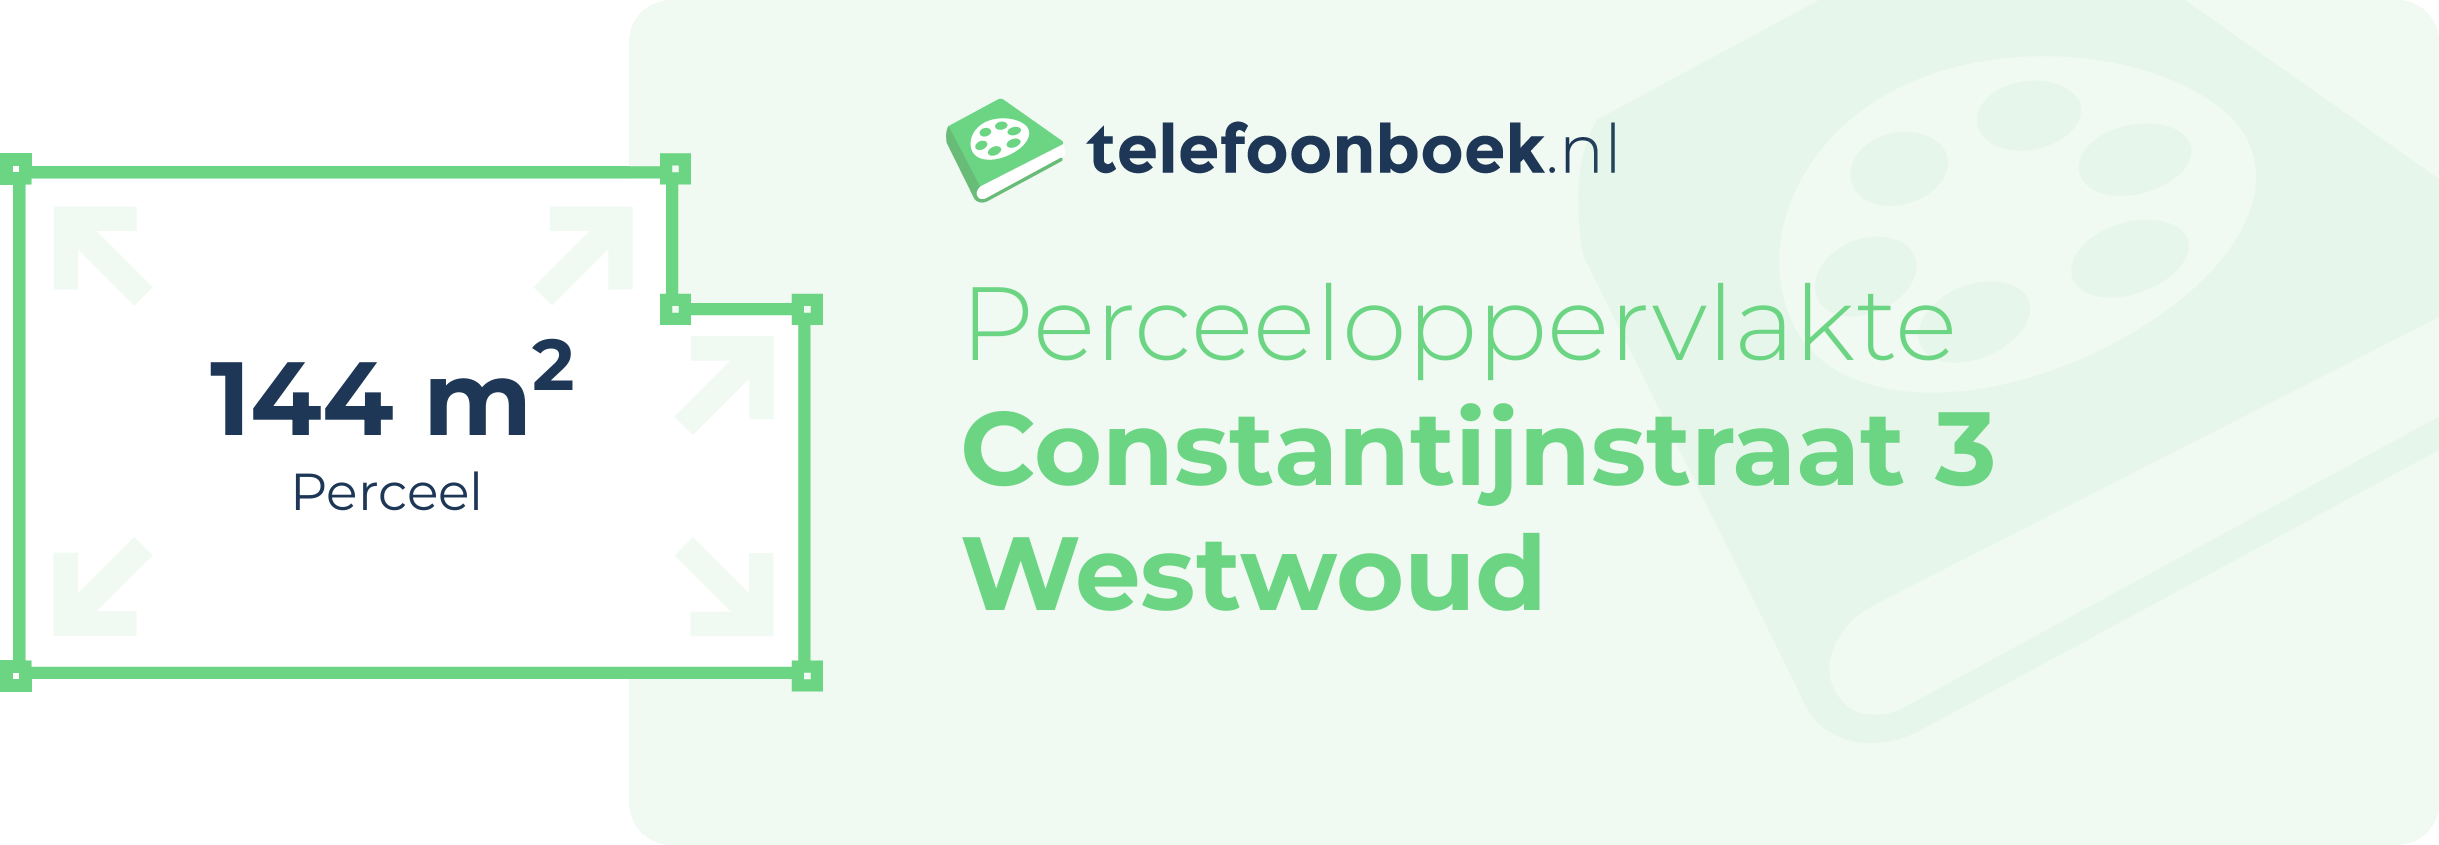 Perceeloppervlakte Constantijnstraat 3 Westwoud